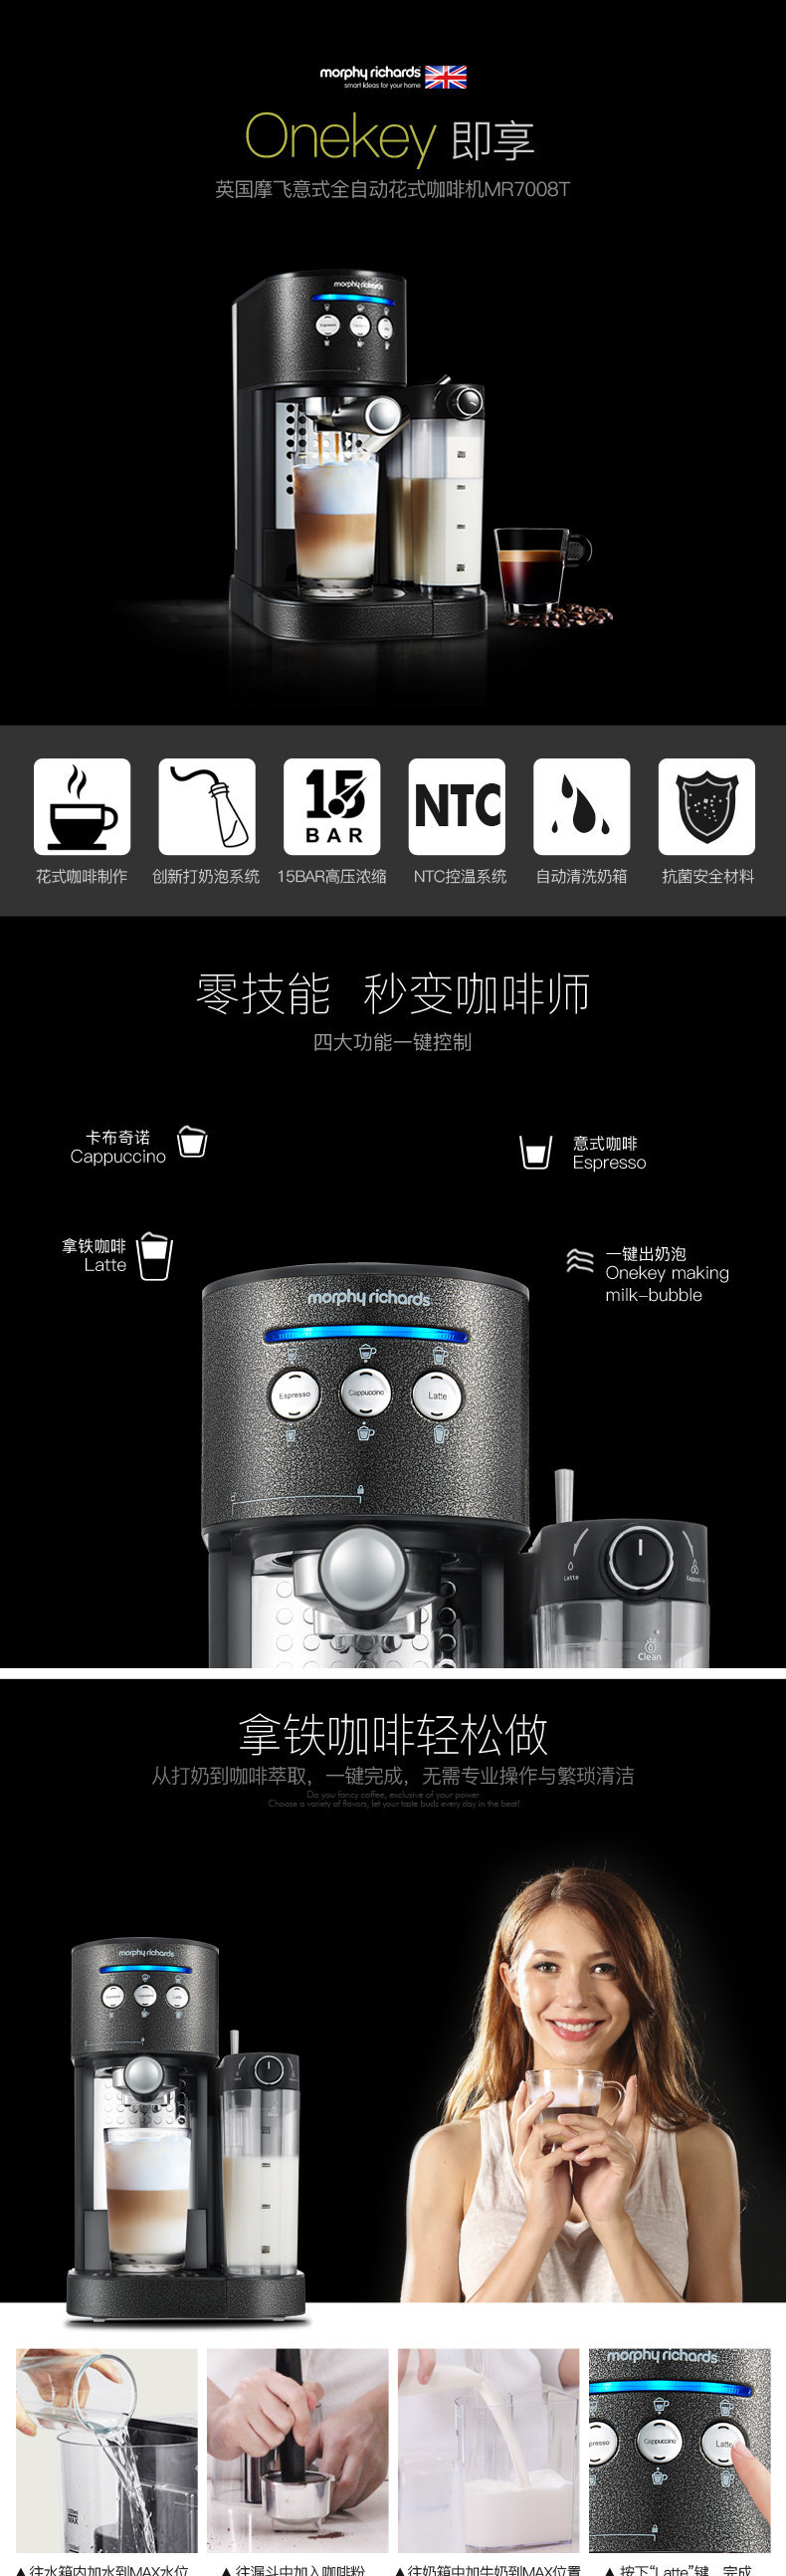 英国摩飞(MORPHY RICHARDS) MR7008-T家用自动意式智能咖啡机